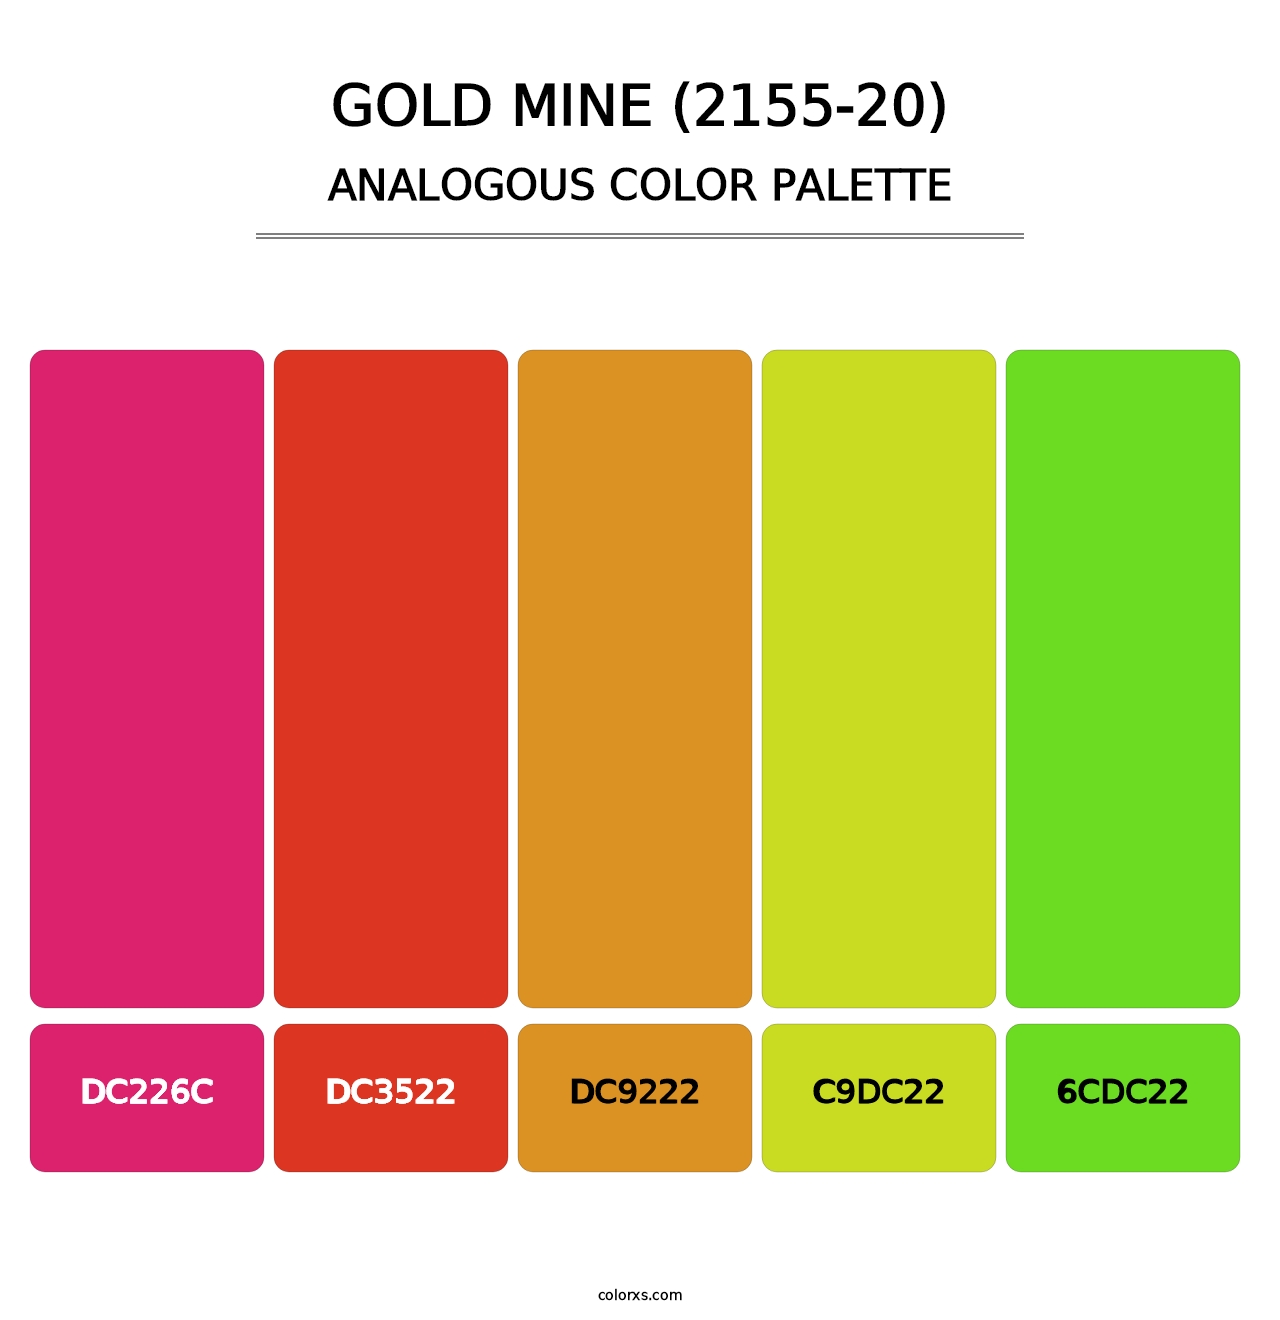 Gold Mine (2155-20) - Analogous Color Palette